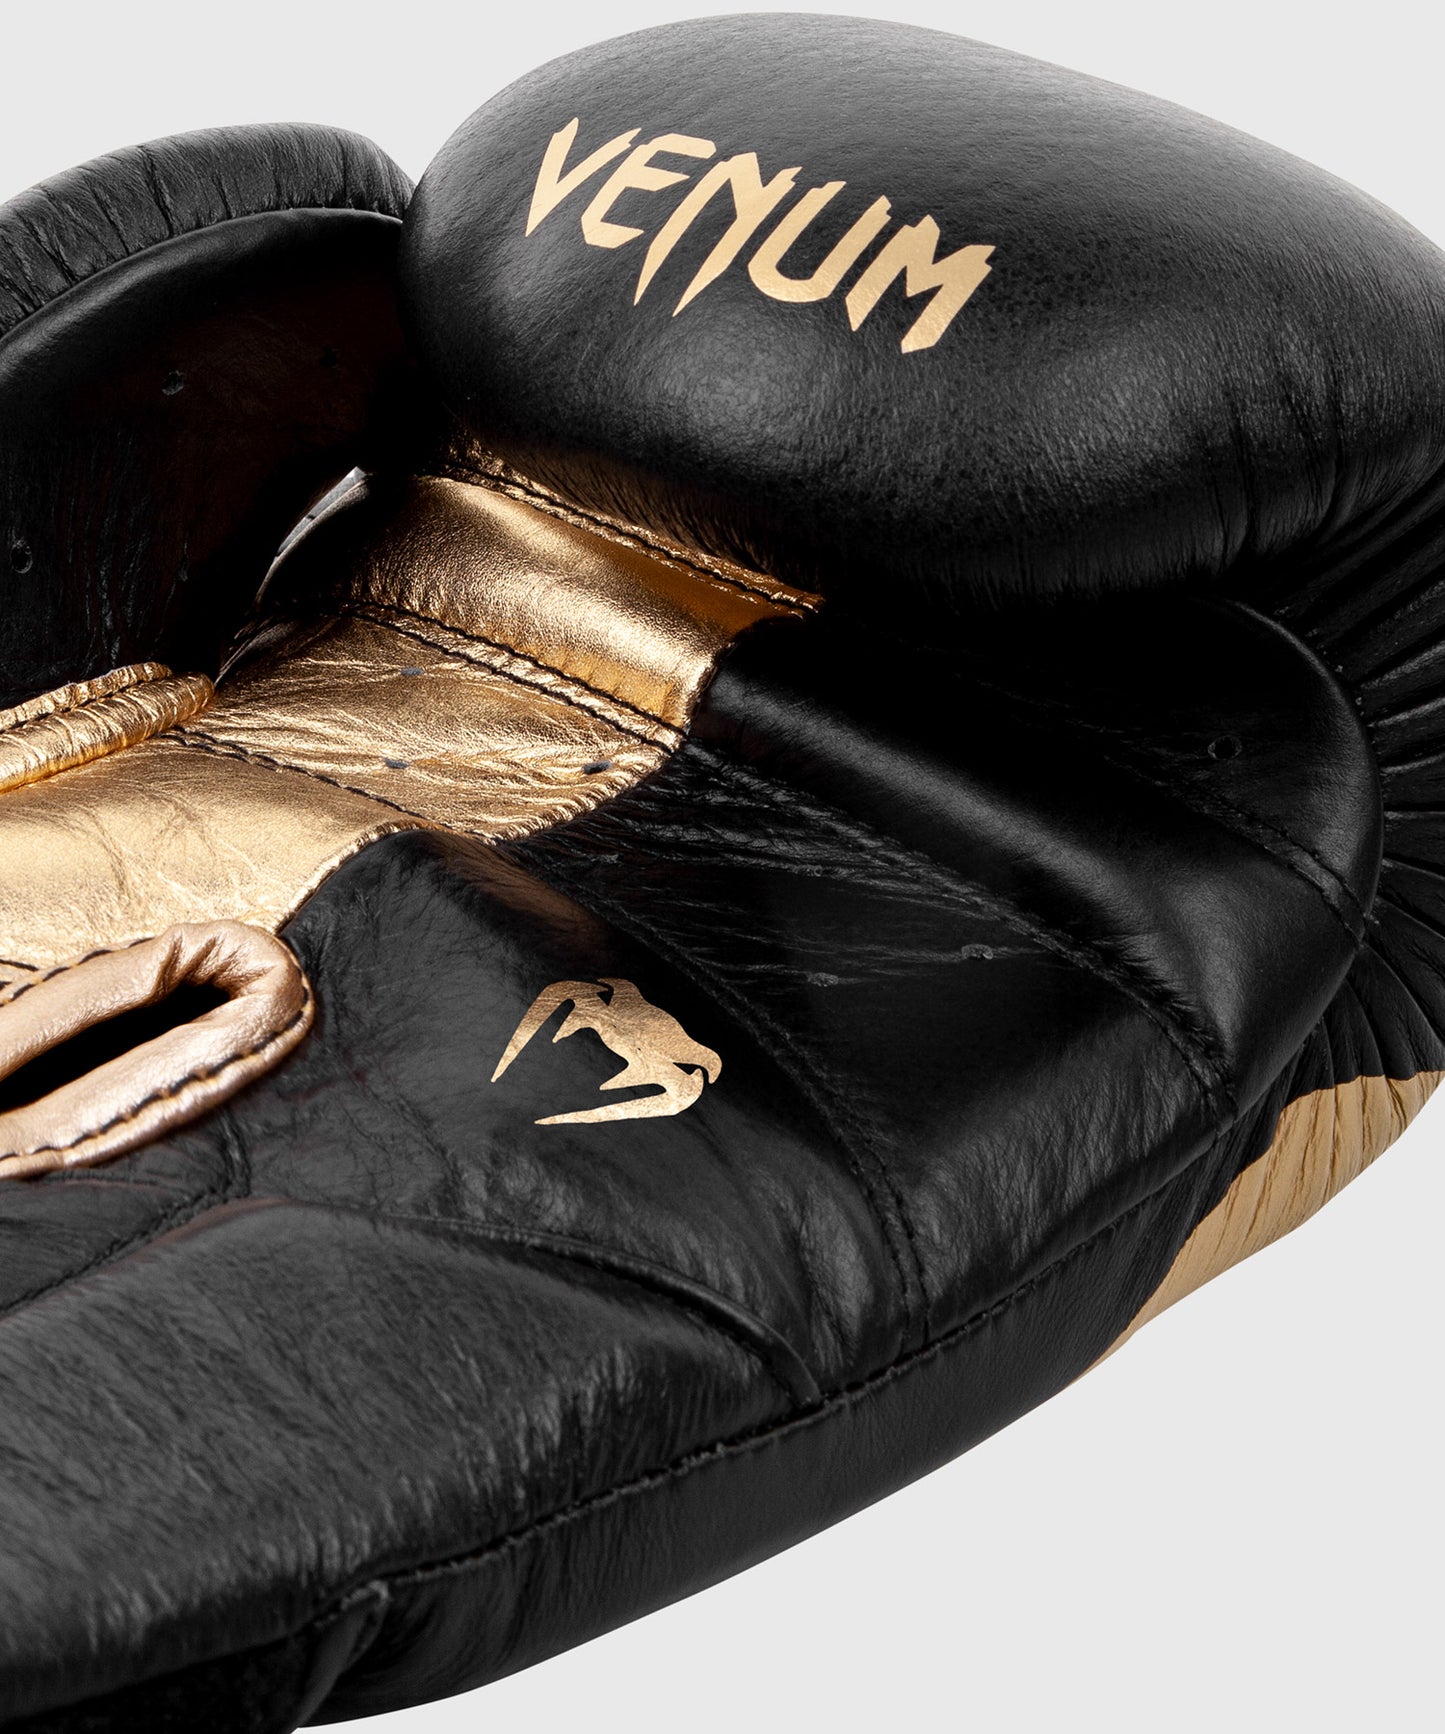 Venum Giant 2.0 professionelle Boxhandschuhe - Klettverschluss - Schwarz/Gold